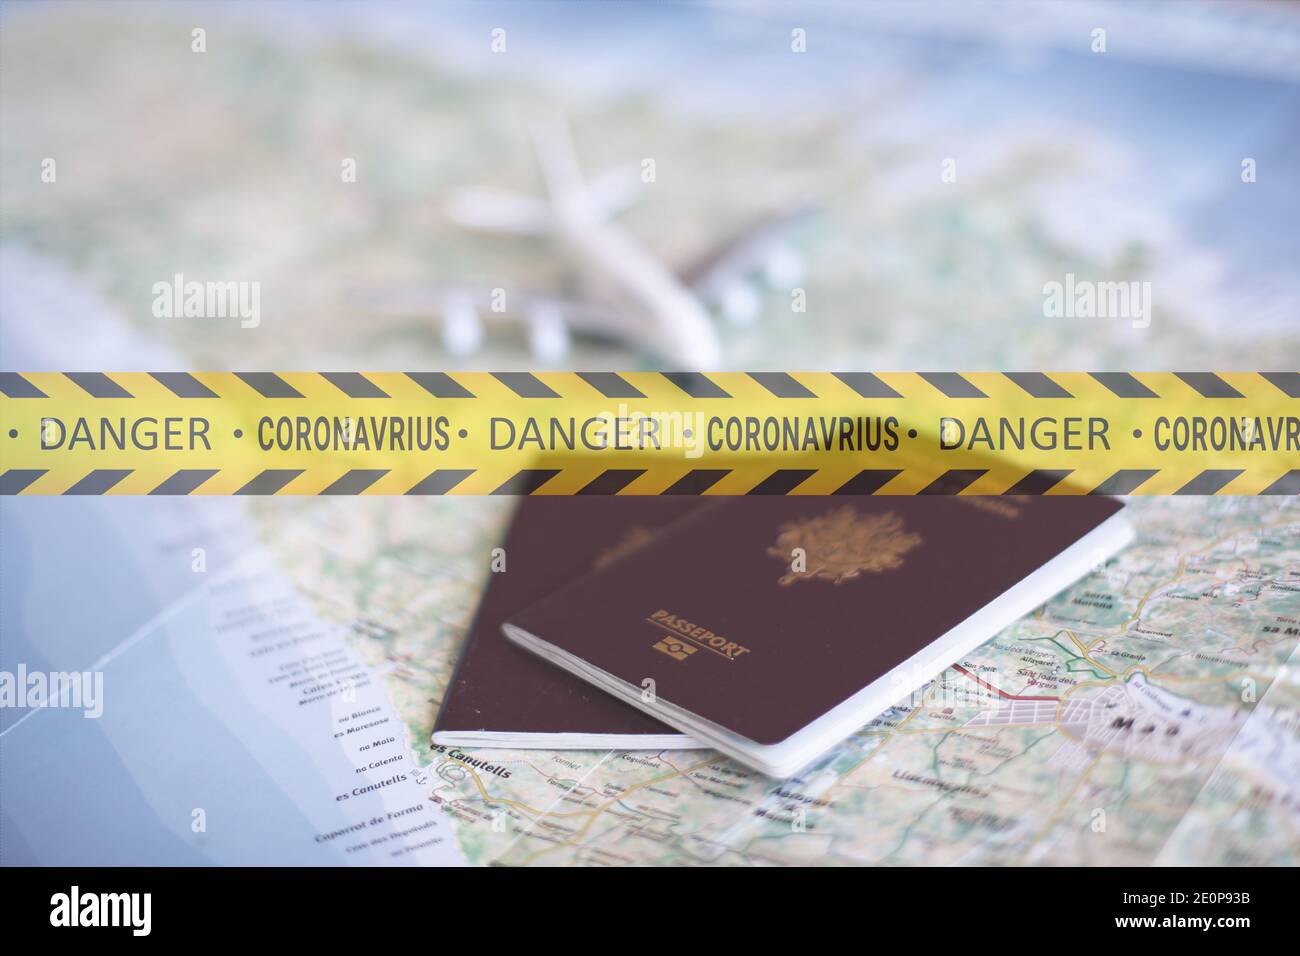 Voyage touristique danger avec le coronavirus, danger de voyage concept voyage risqué en raison du coronavirus Banque D'Images